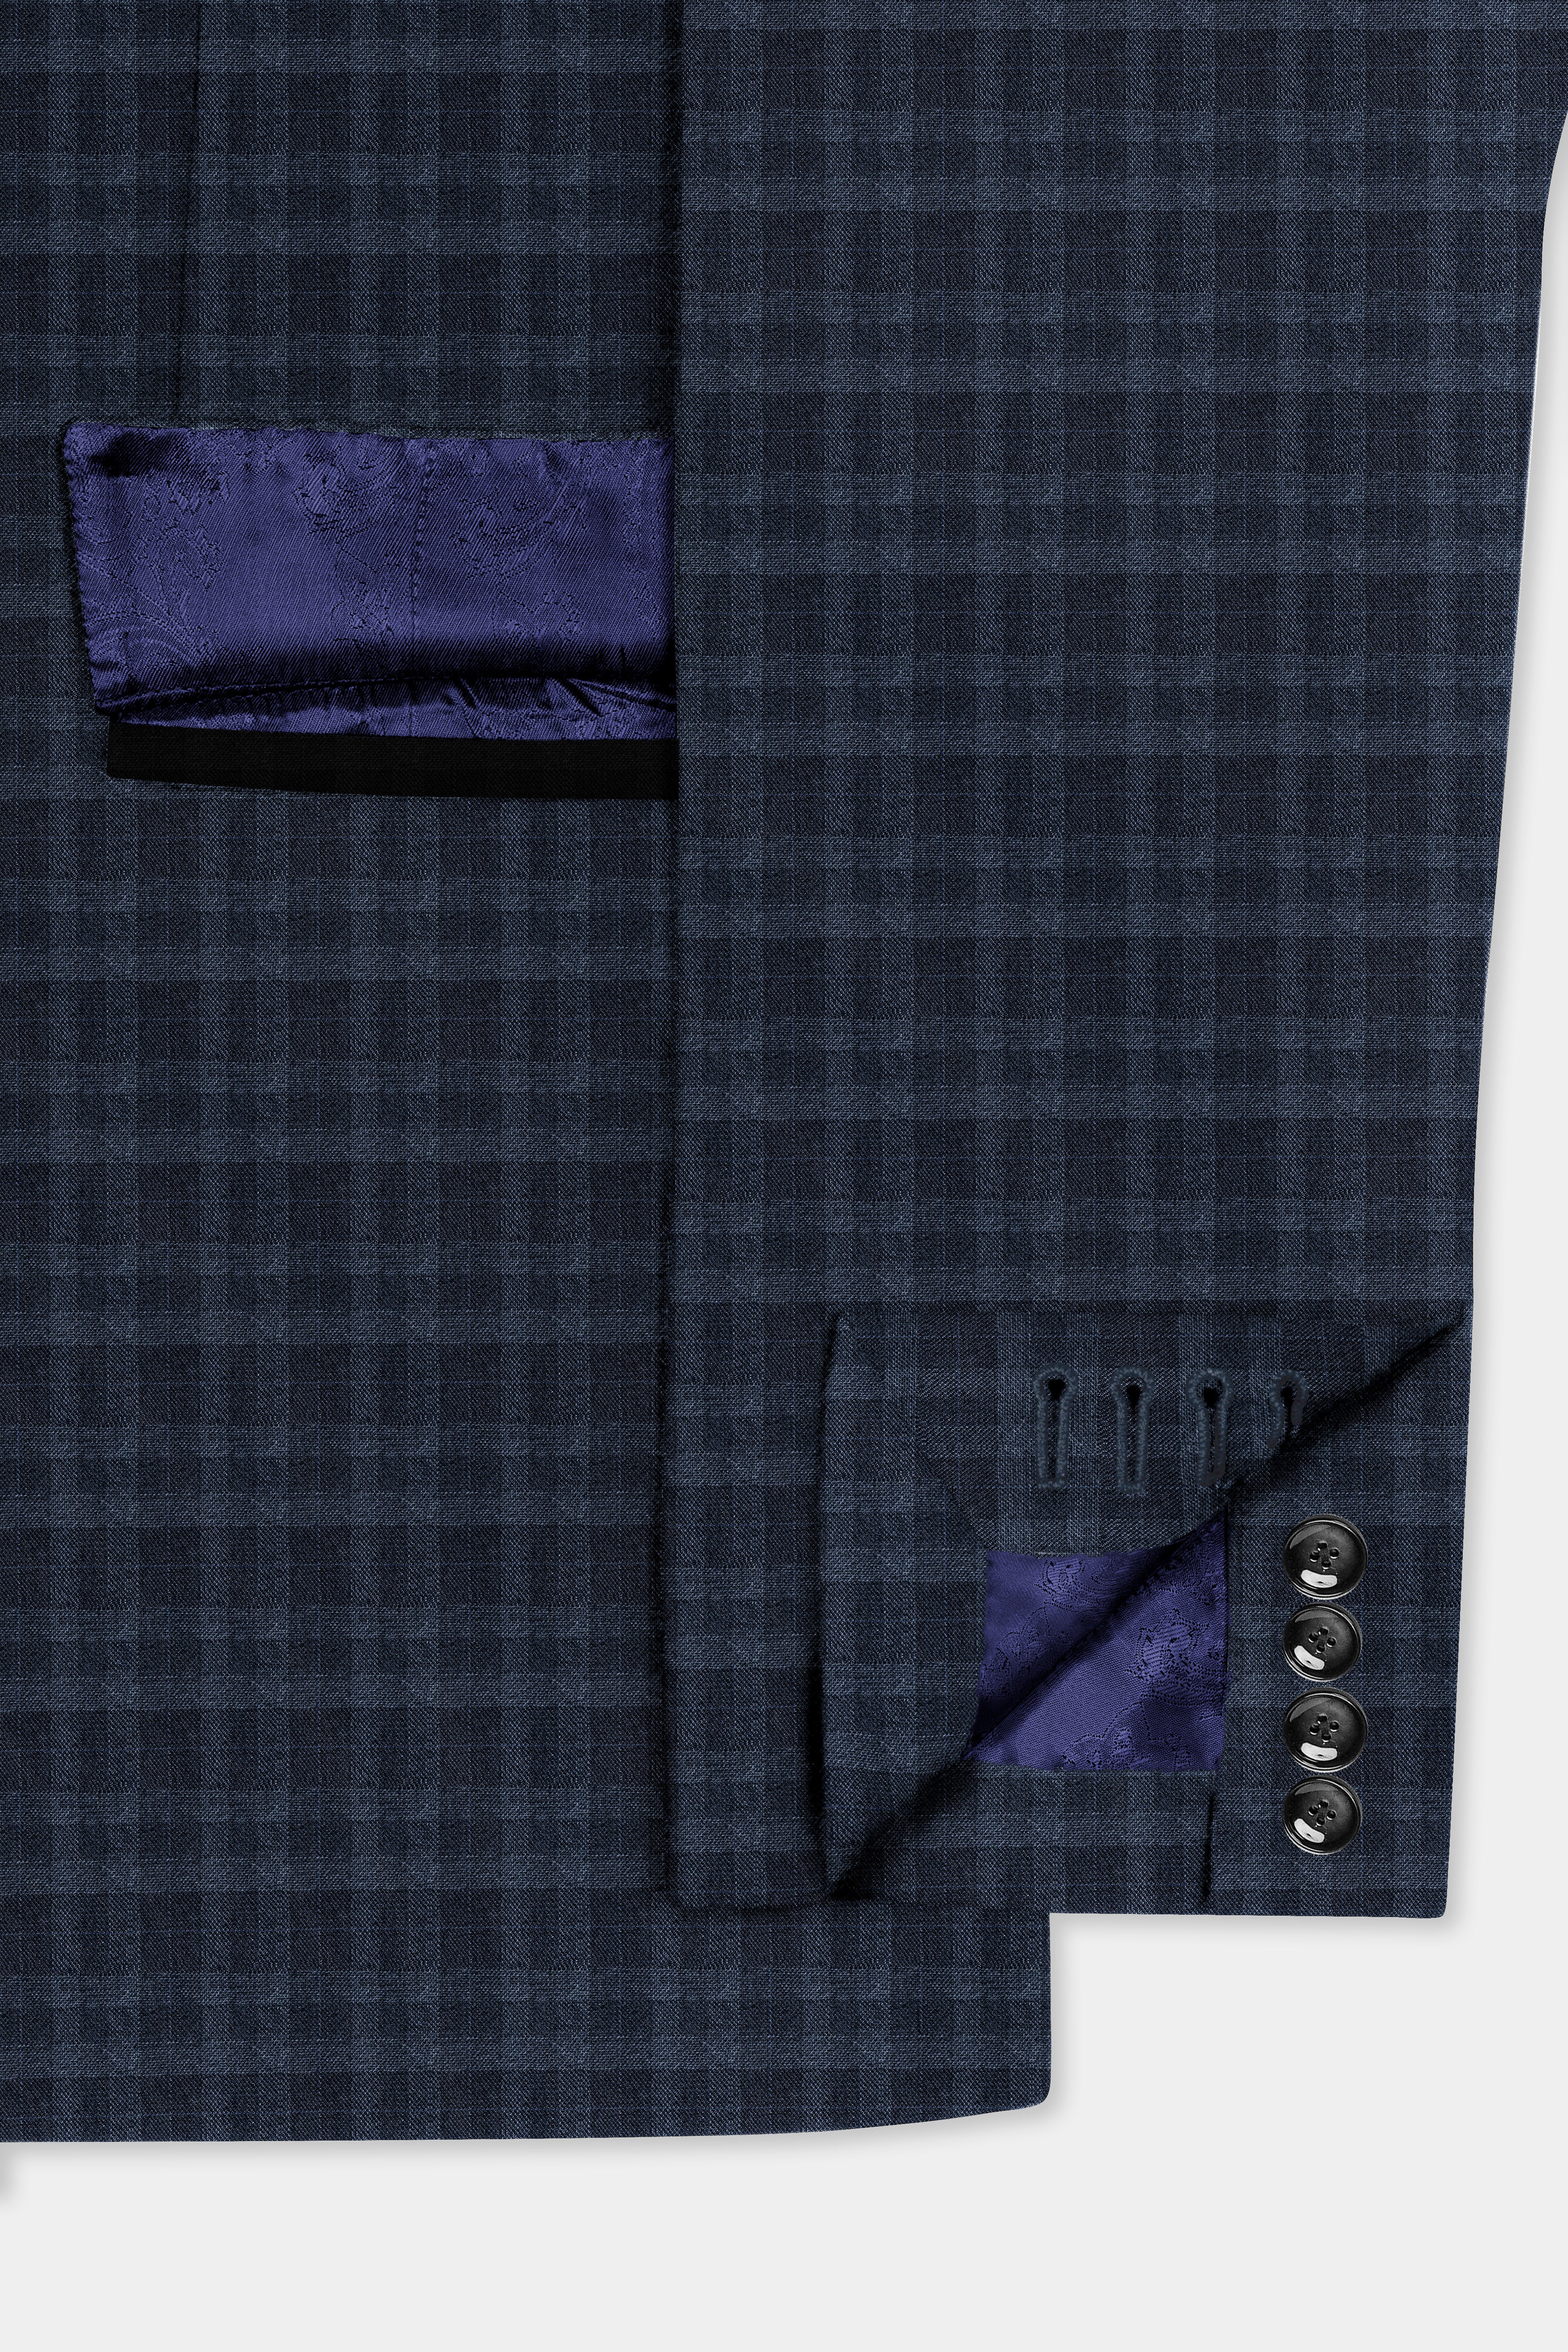 Baltic Blue Windowpane Wool Rich Tuxedo Suit